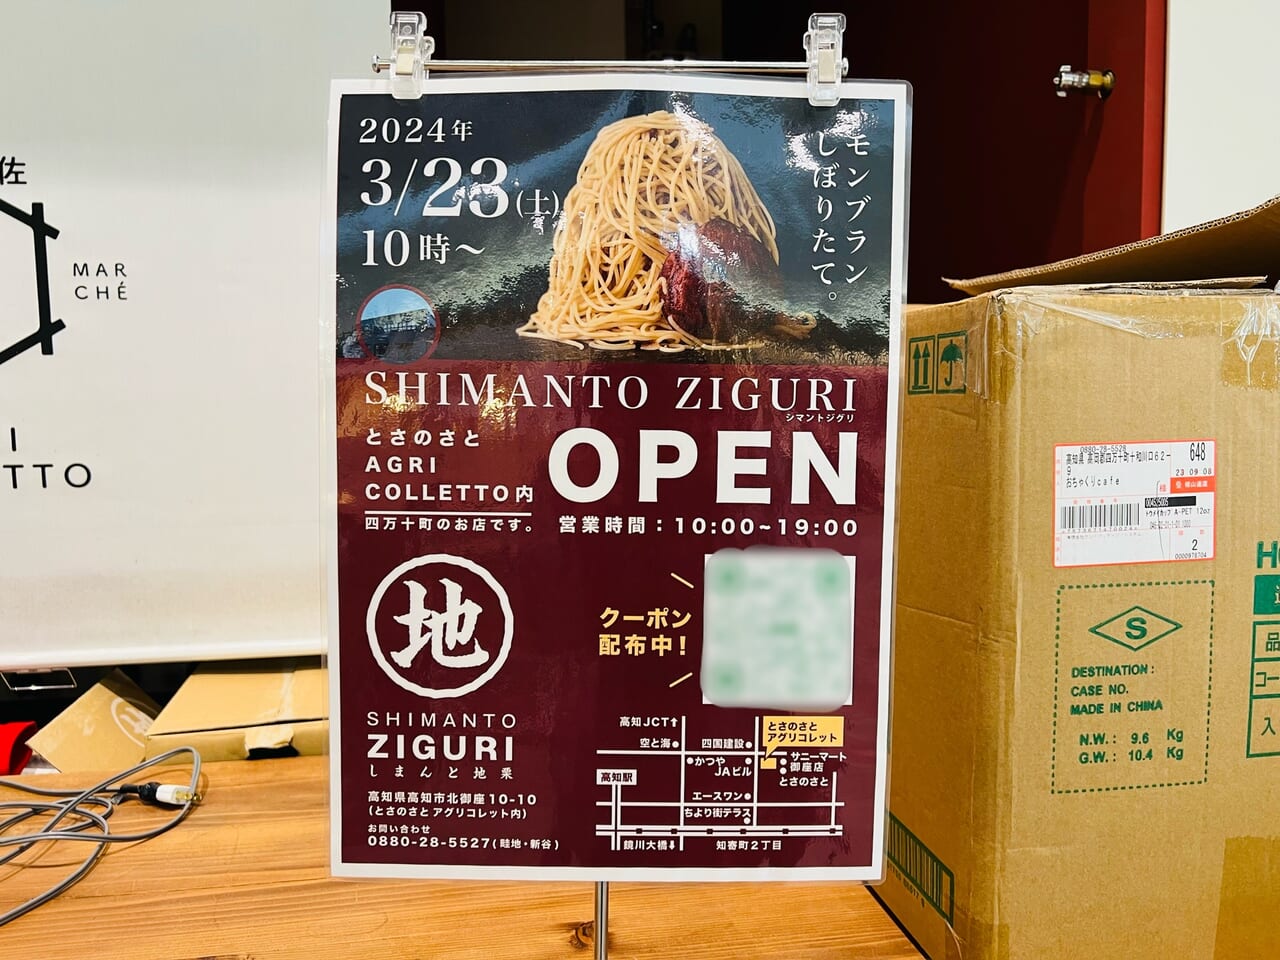 2024年3月23日に「とさのさと AGRI COLLETTO」に7オープン予定の「SHIMANTO ZIGURI」のチラシ